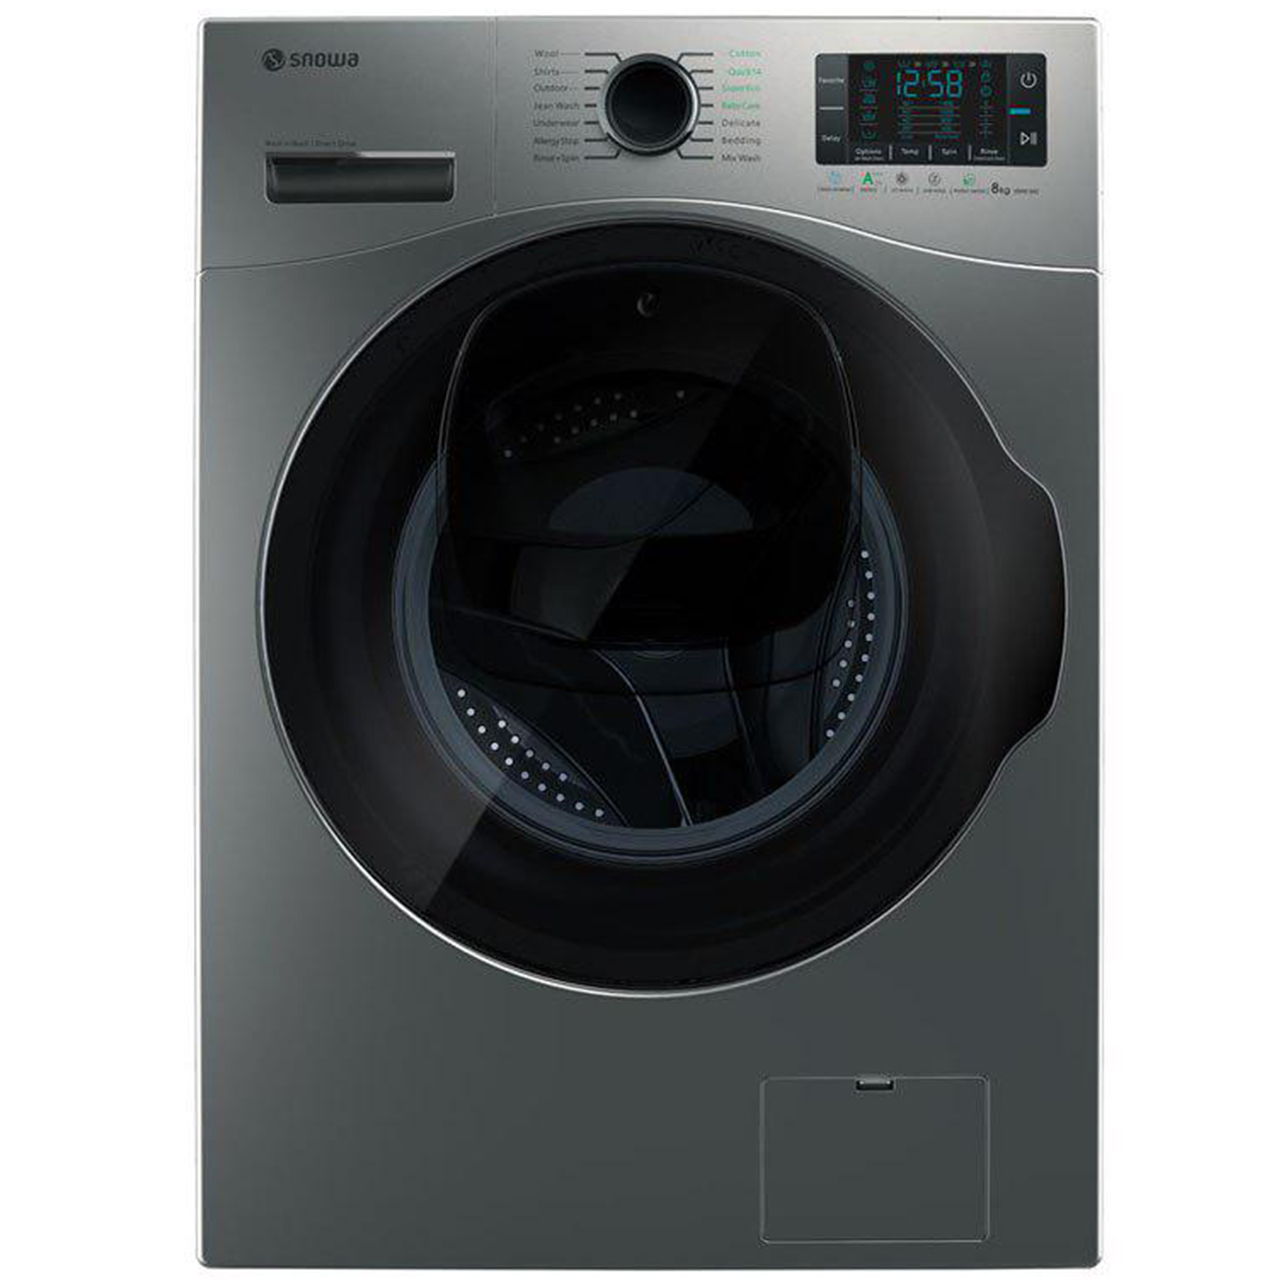 ماشین لباسشویی Wash in Wash اسنوا مدل SWM-842S ظرفیت 8 کیلوگرم